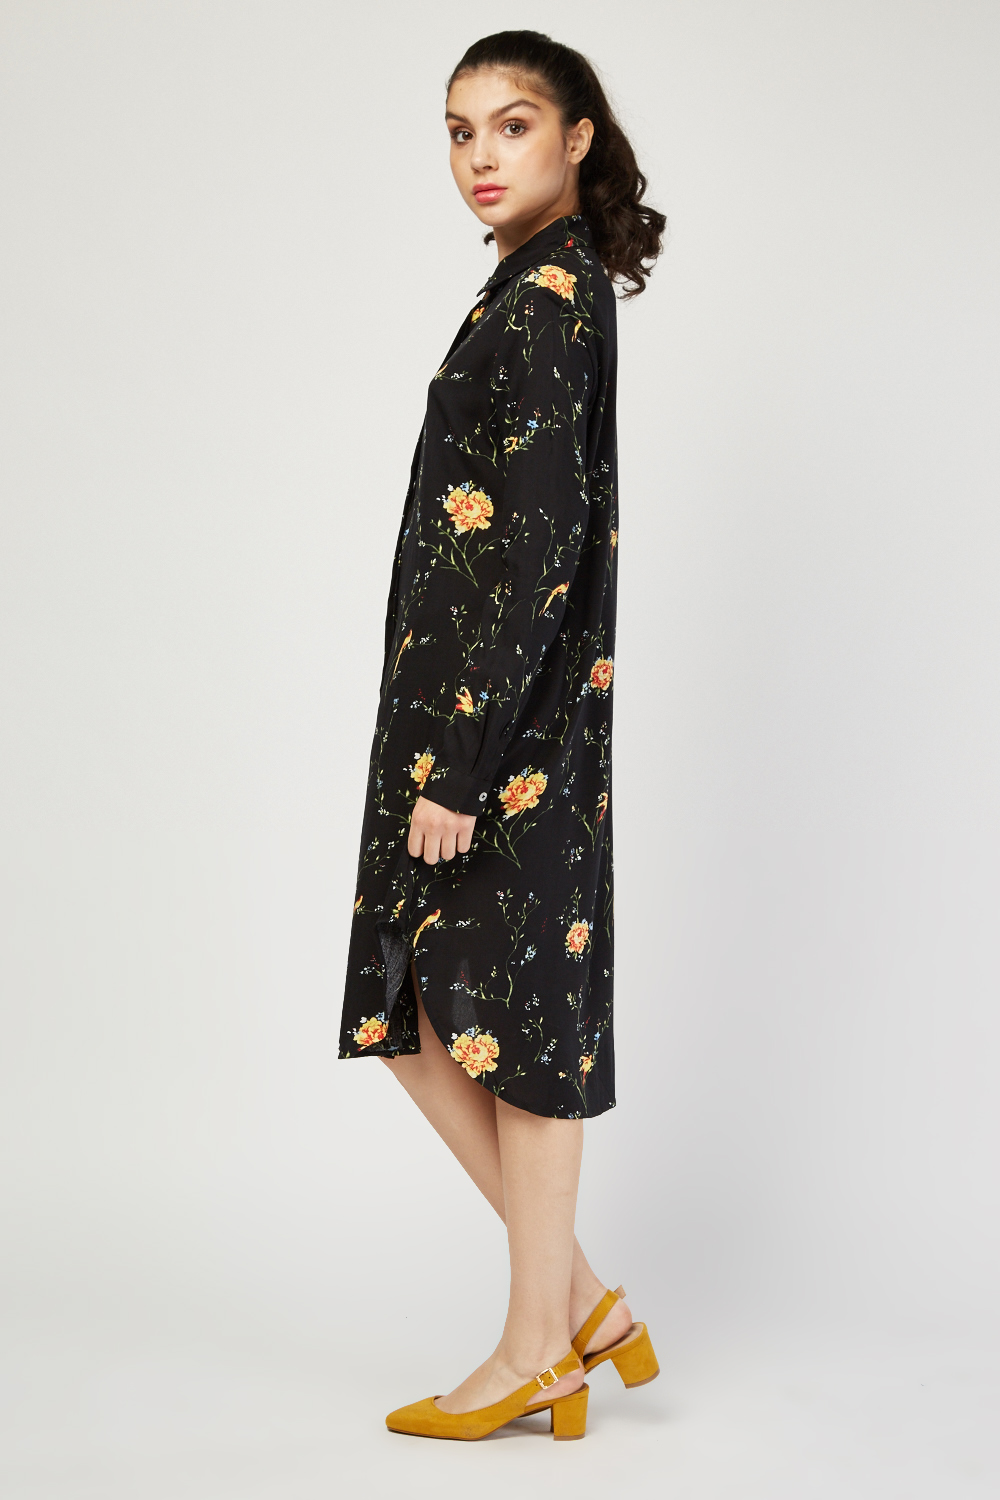 Floral Midi Shirt Dress - Just $7